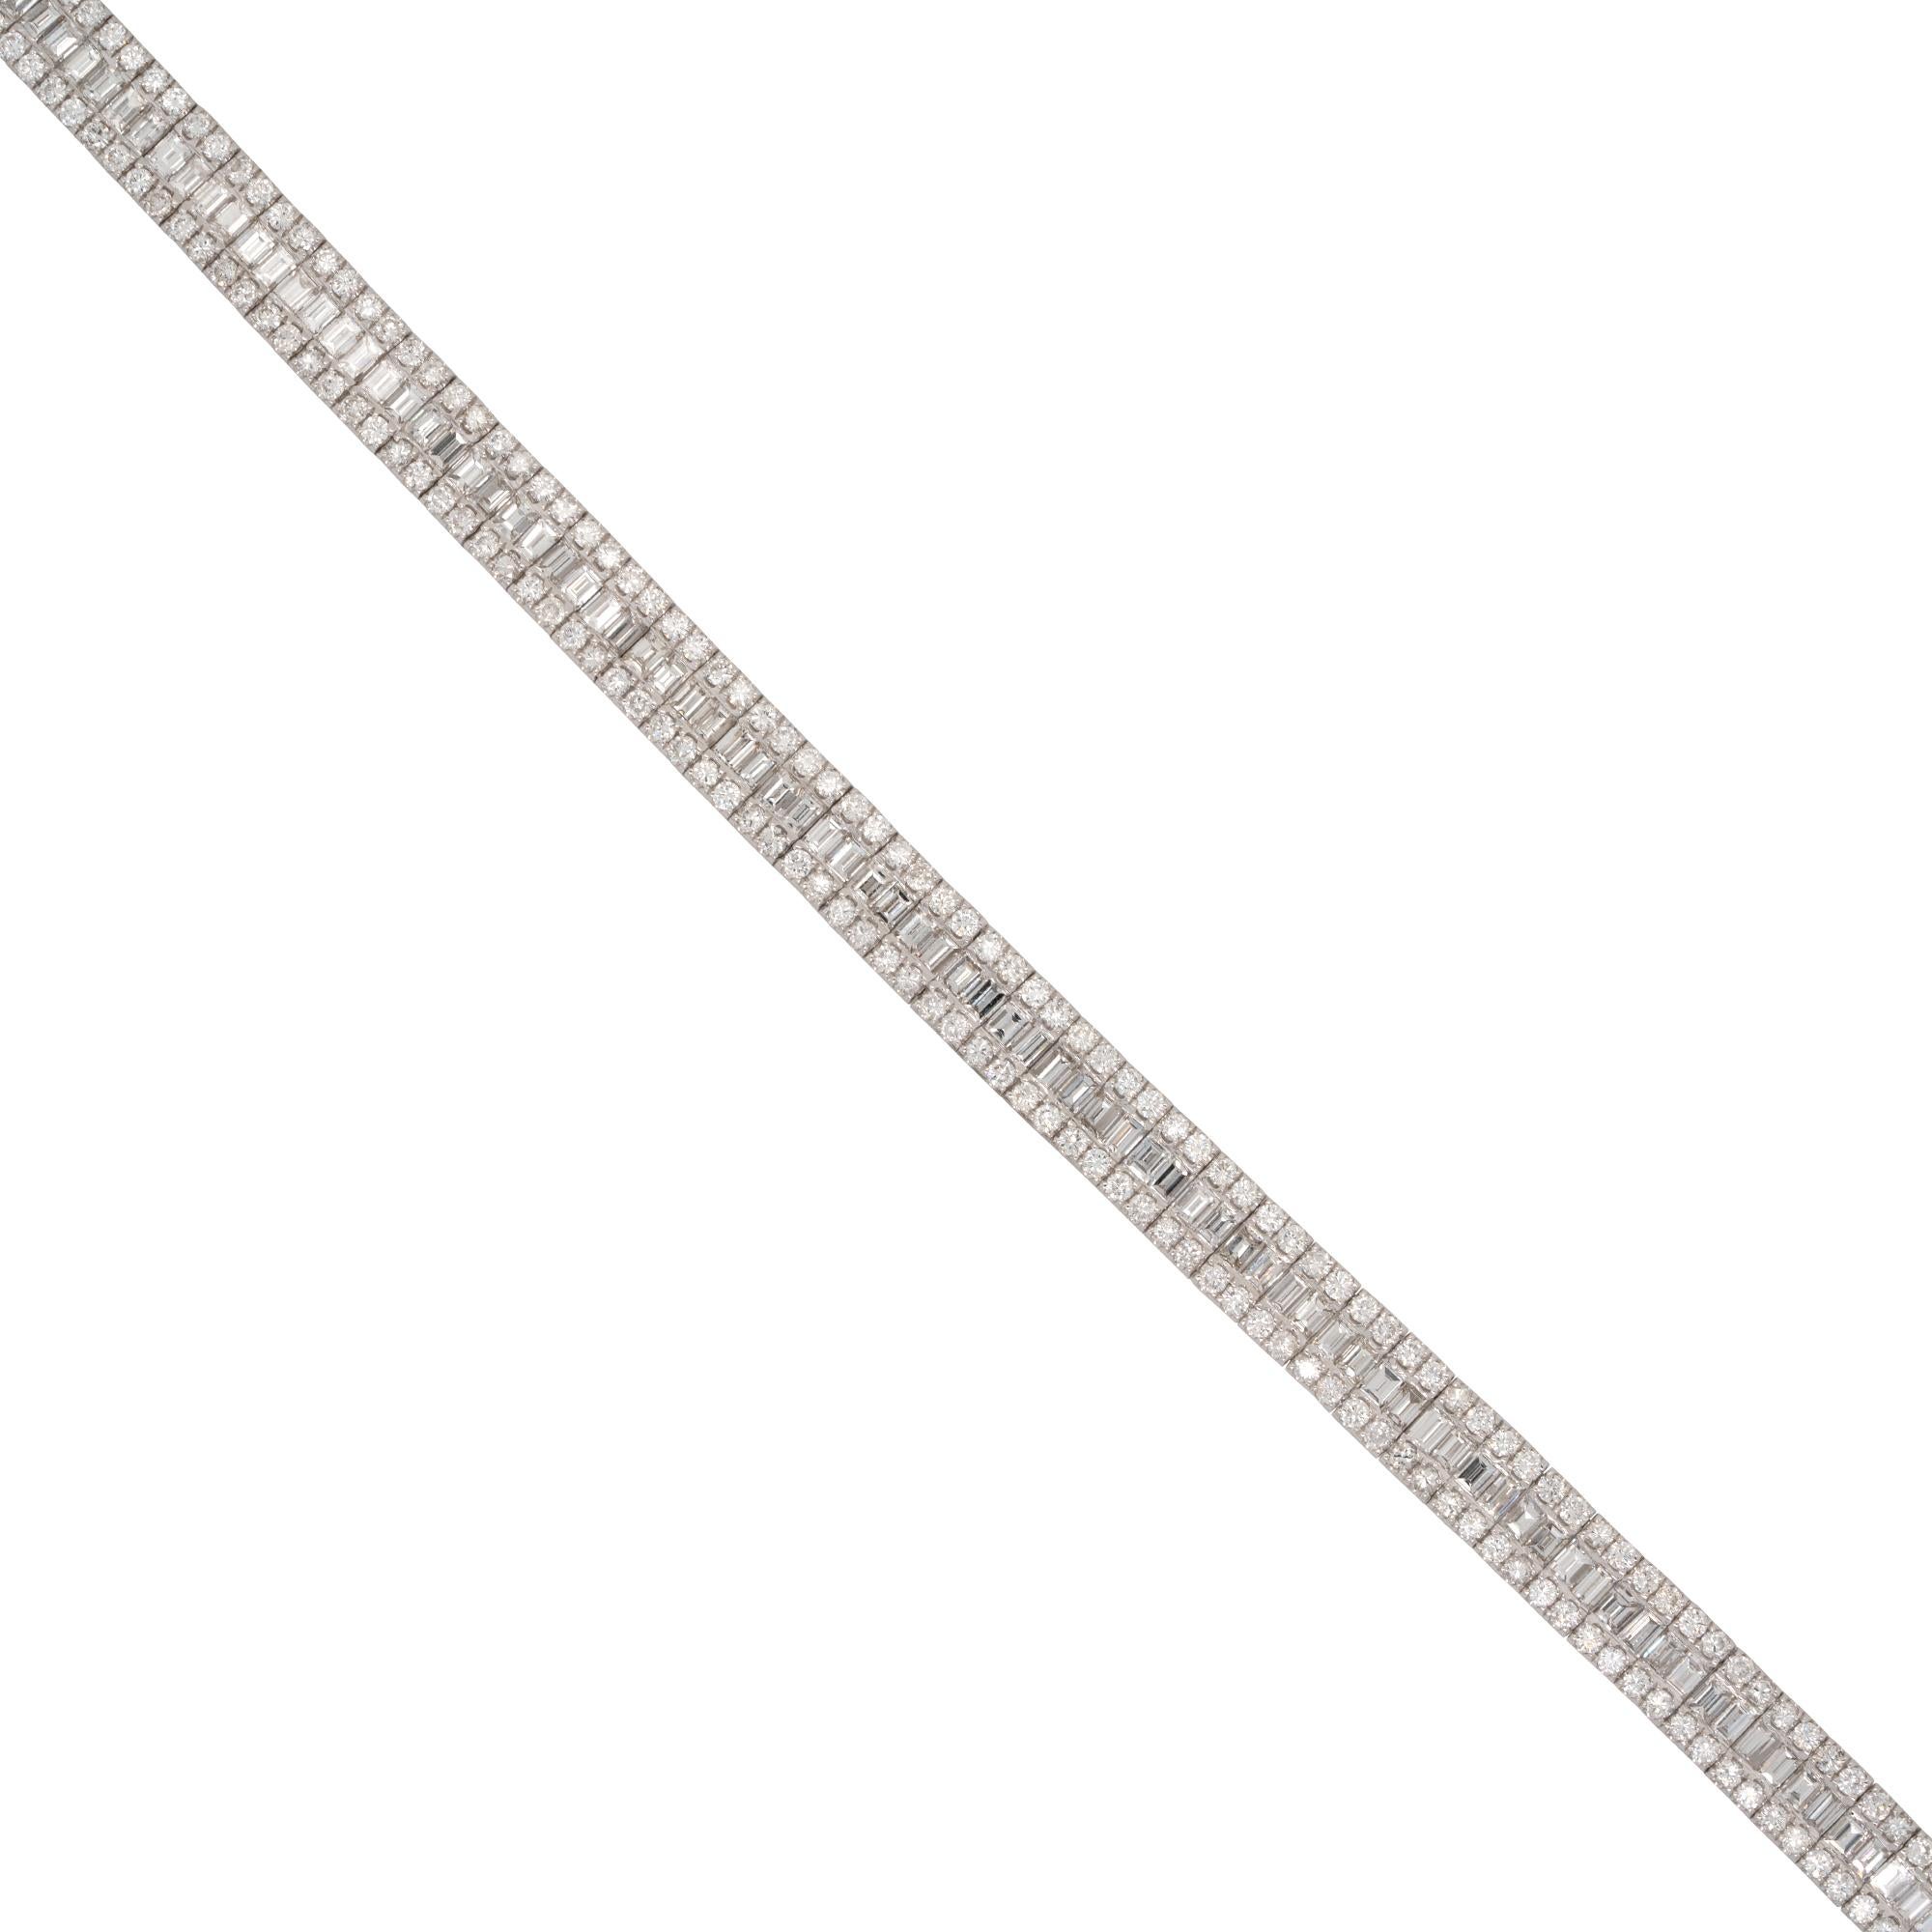 MATERIAL : Or blanc 18k
Détails des diamants : Environ 8.11ctw de diamants ronds et baguettes. Les diamants sont de couleur G/H et de pureté VS.
Dimensions : 7